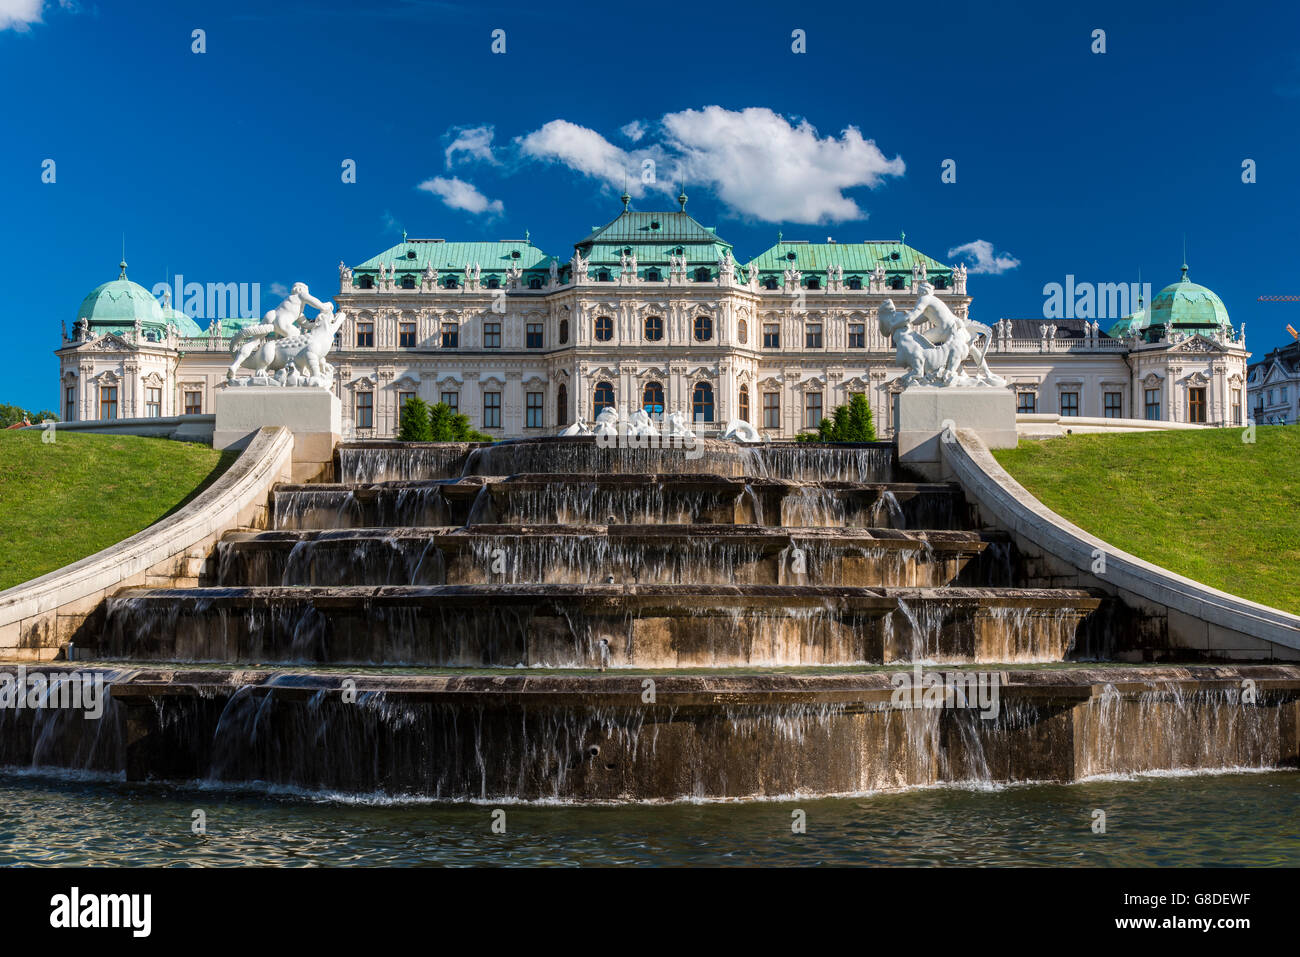 La région de Belvedere, Vienne, Autriche Banque D'Images